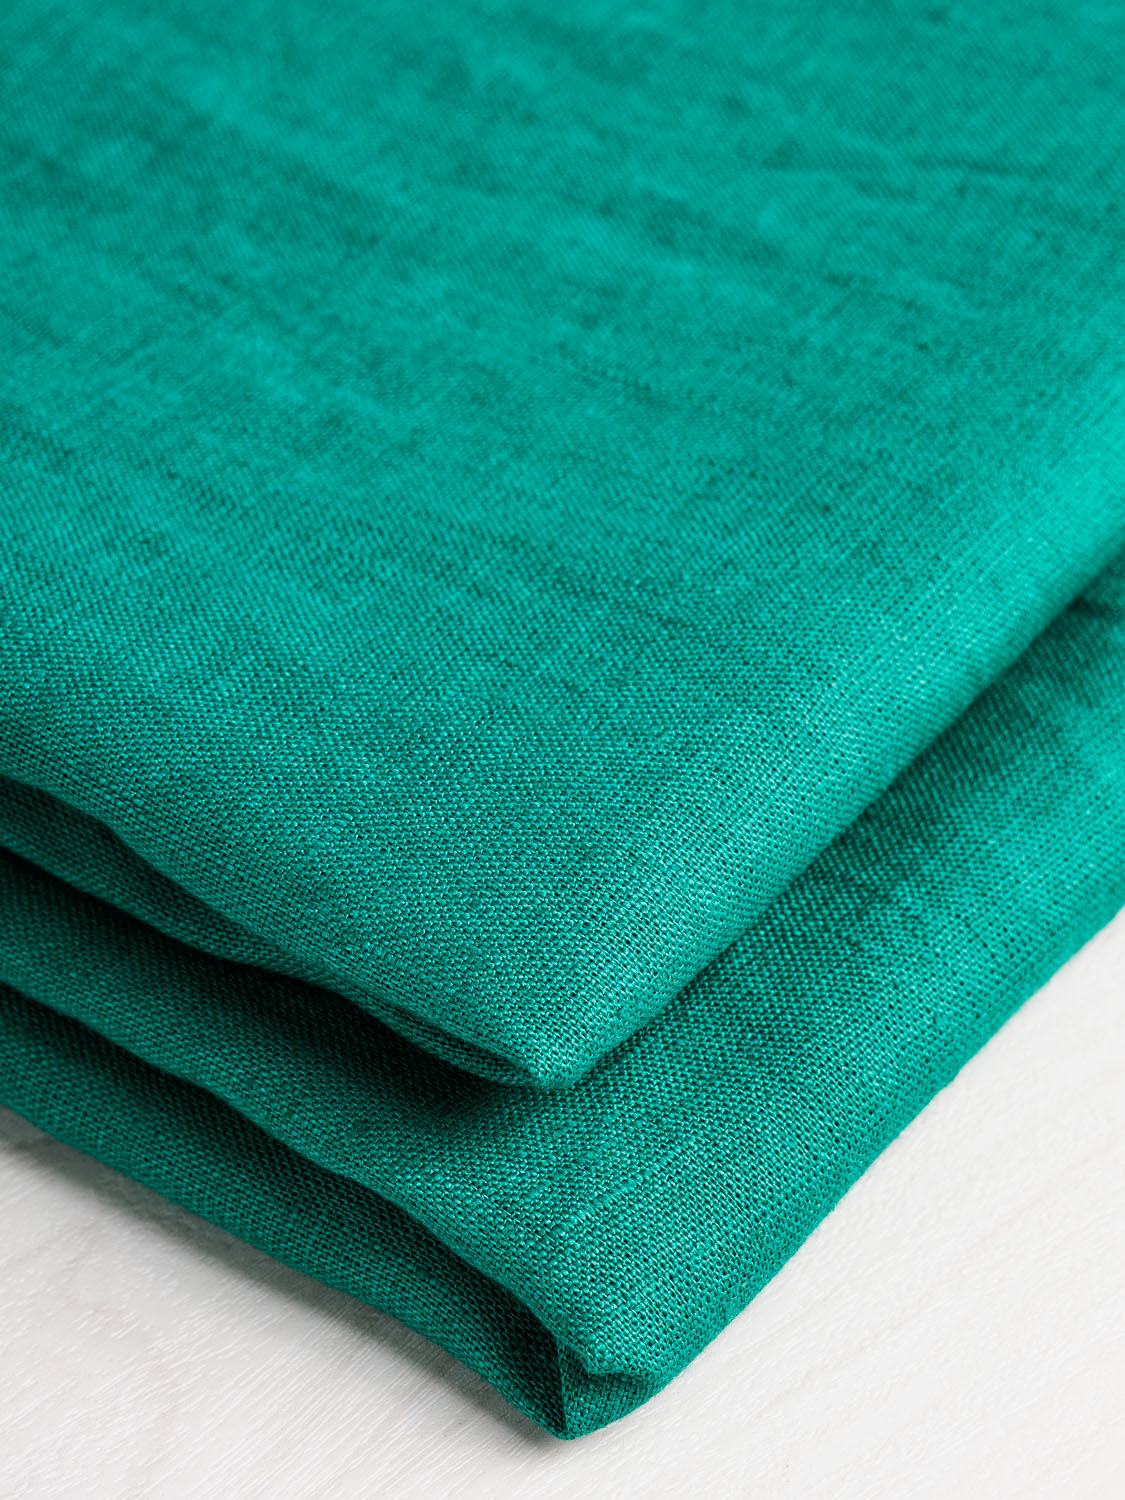 Midweight European Linen - Emerald Green | Core Fabrics